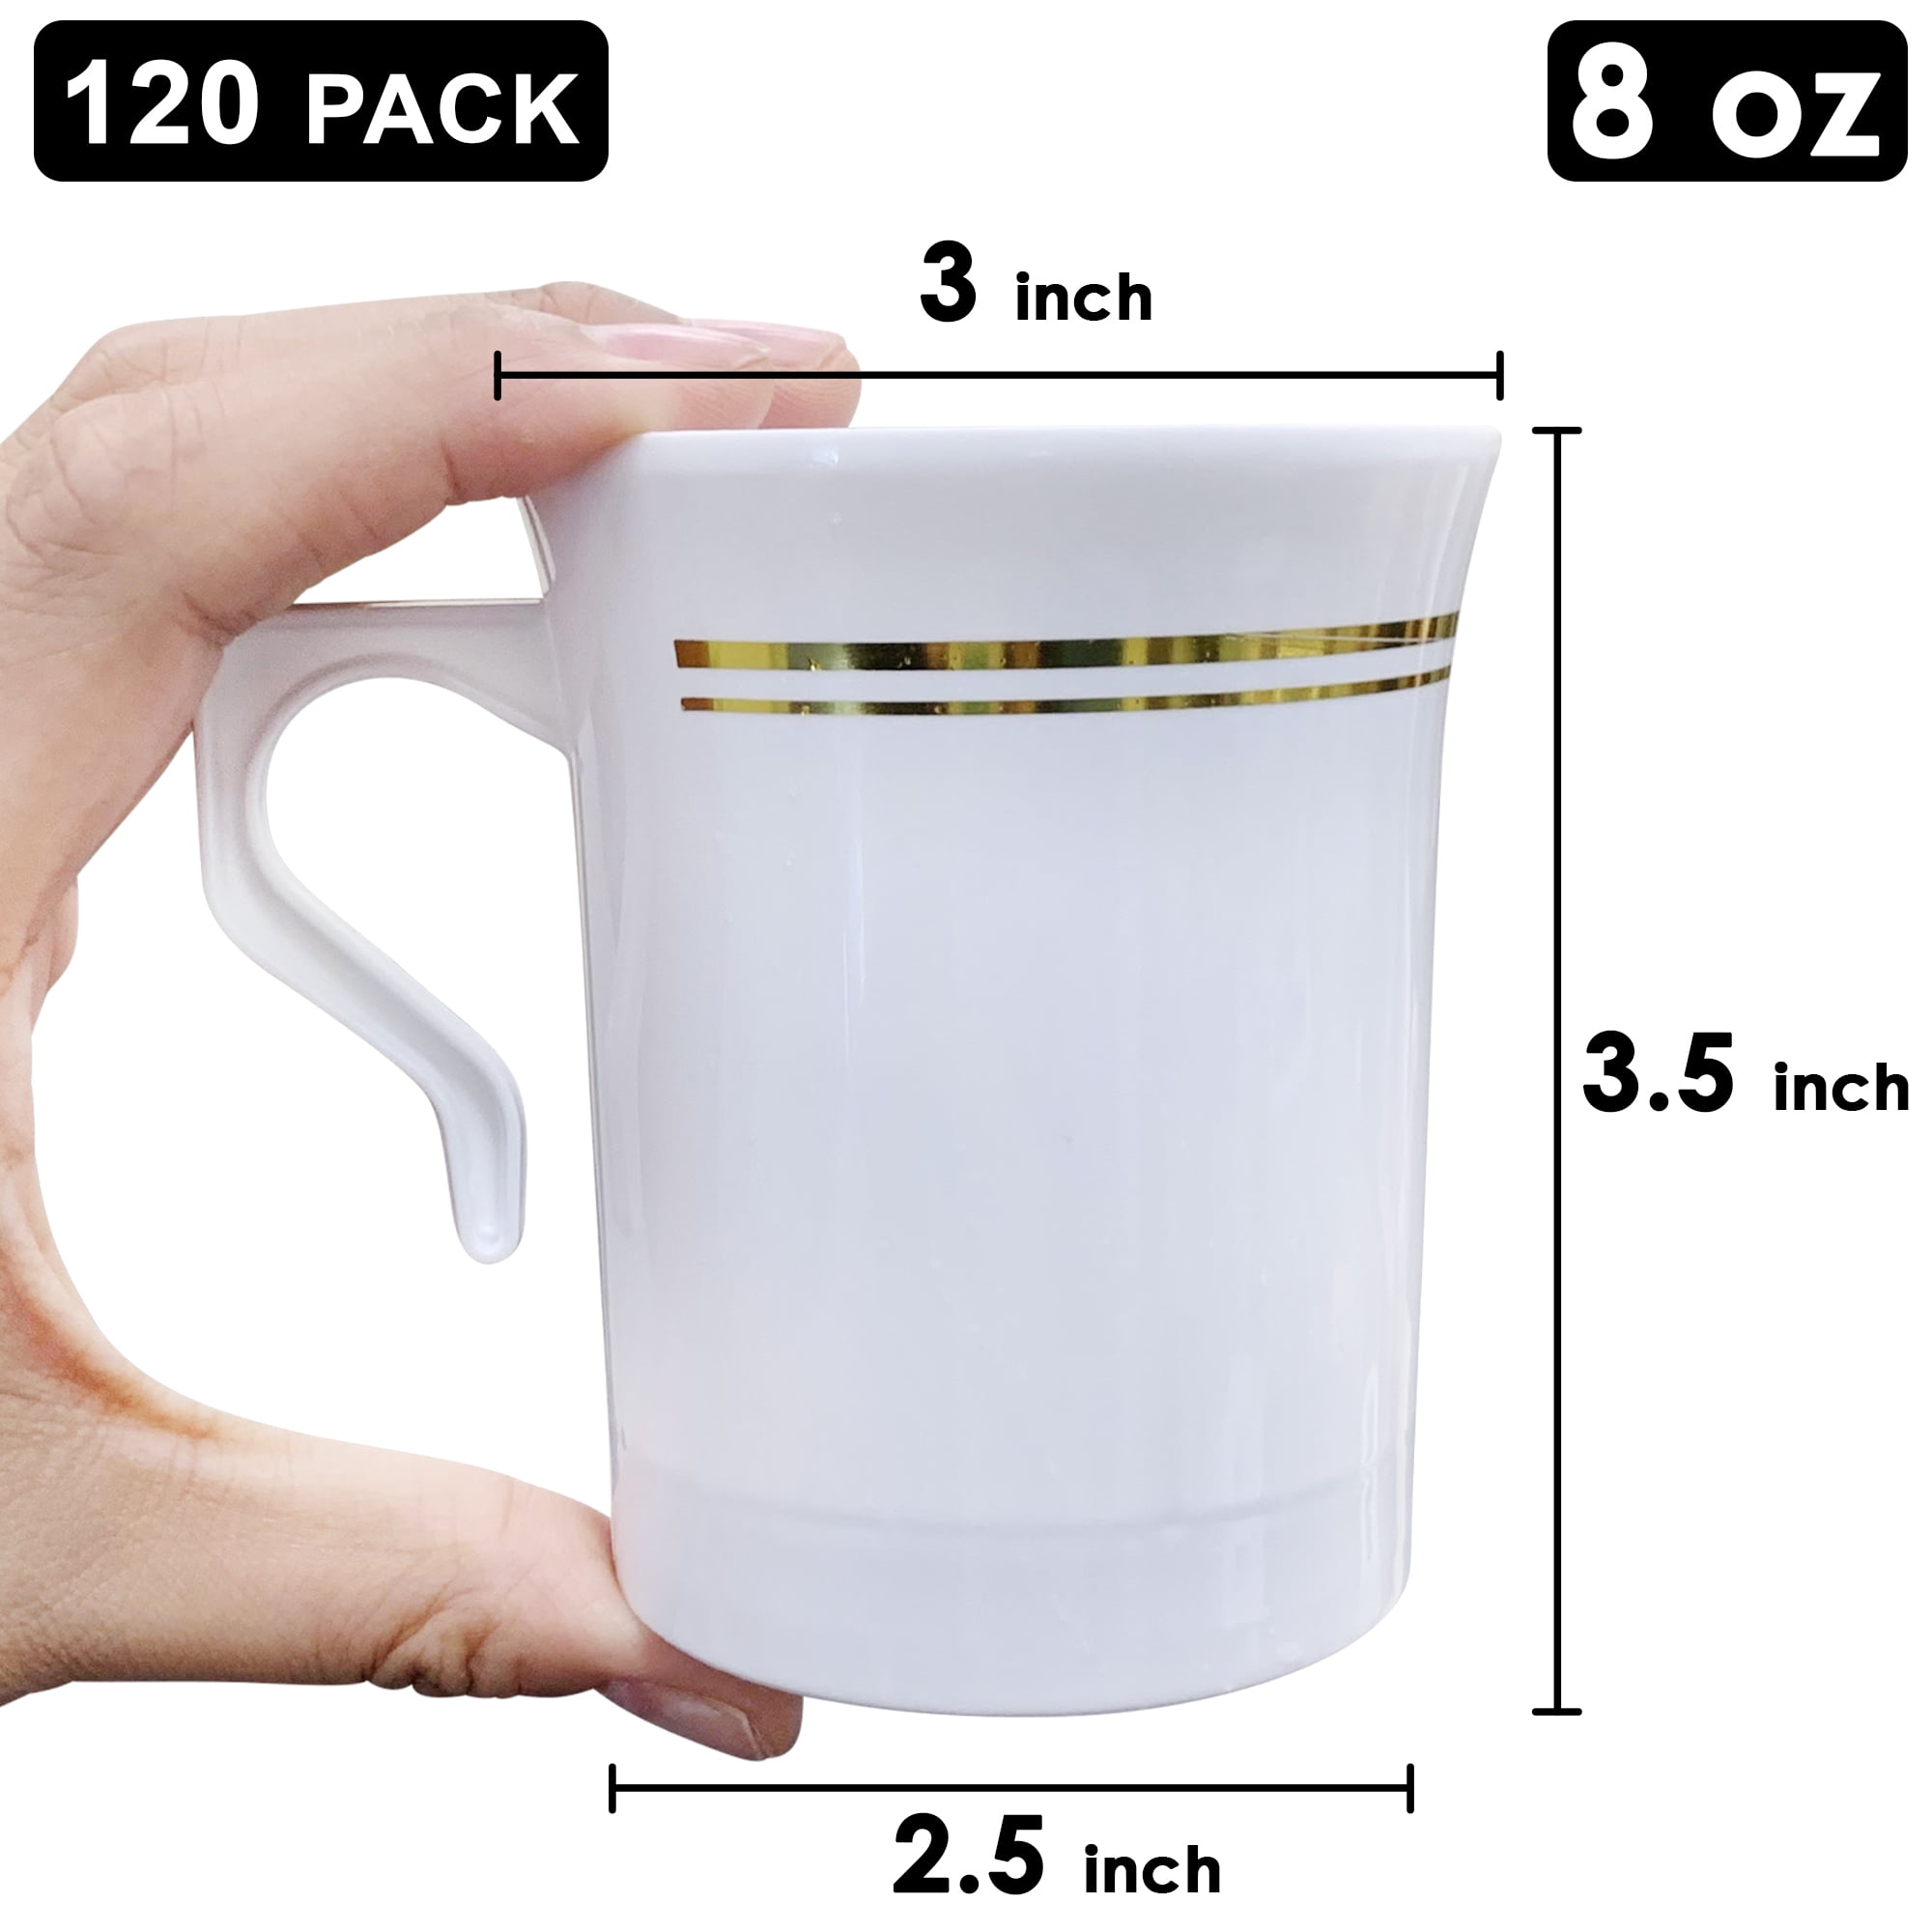 GET TM-1308-U 8 oz Plastic Coffee Mug, White